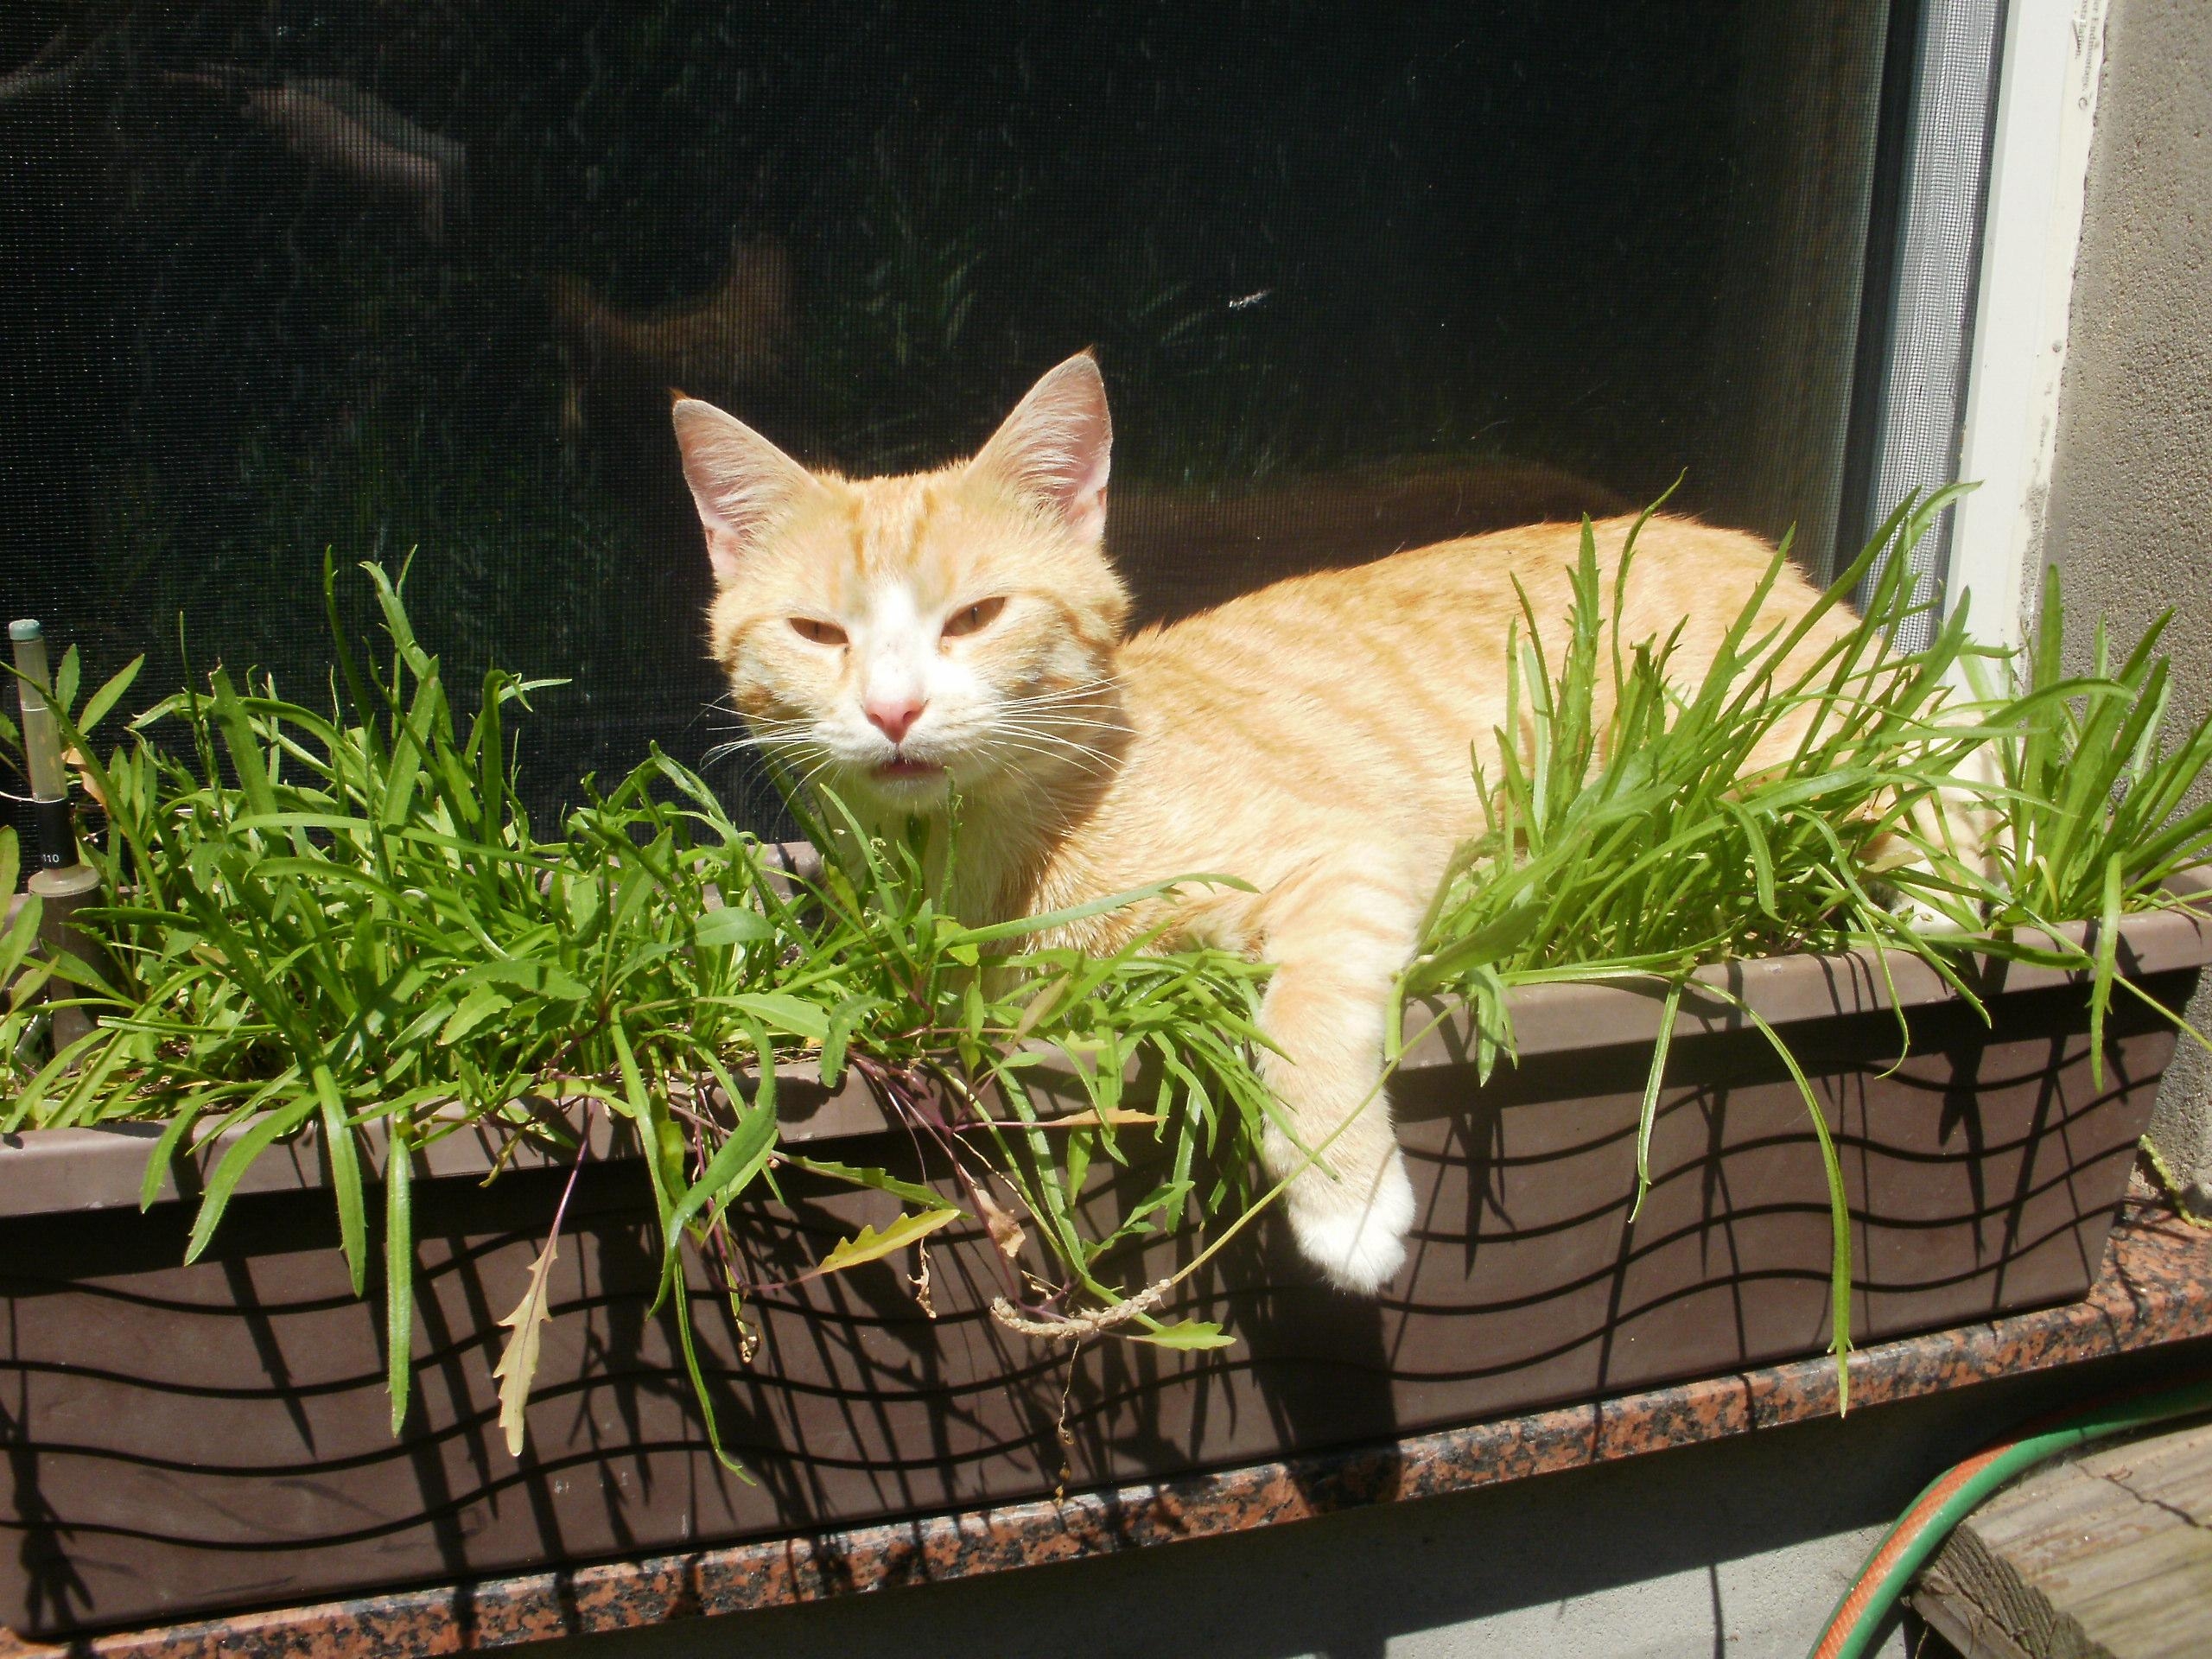 Balkonkasten mit Kräutern und lebender Deko ;) #plantlover #livingchallenge #Katze